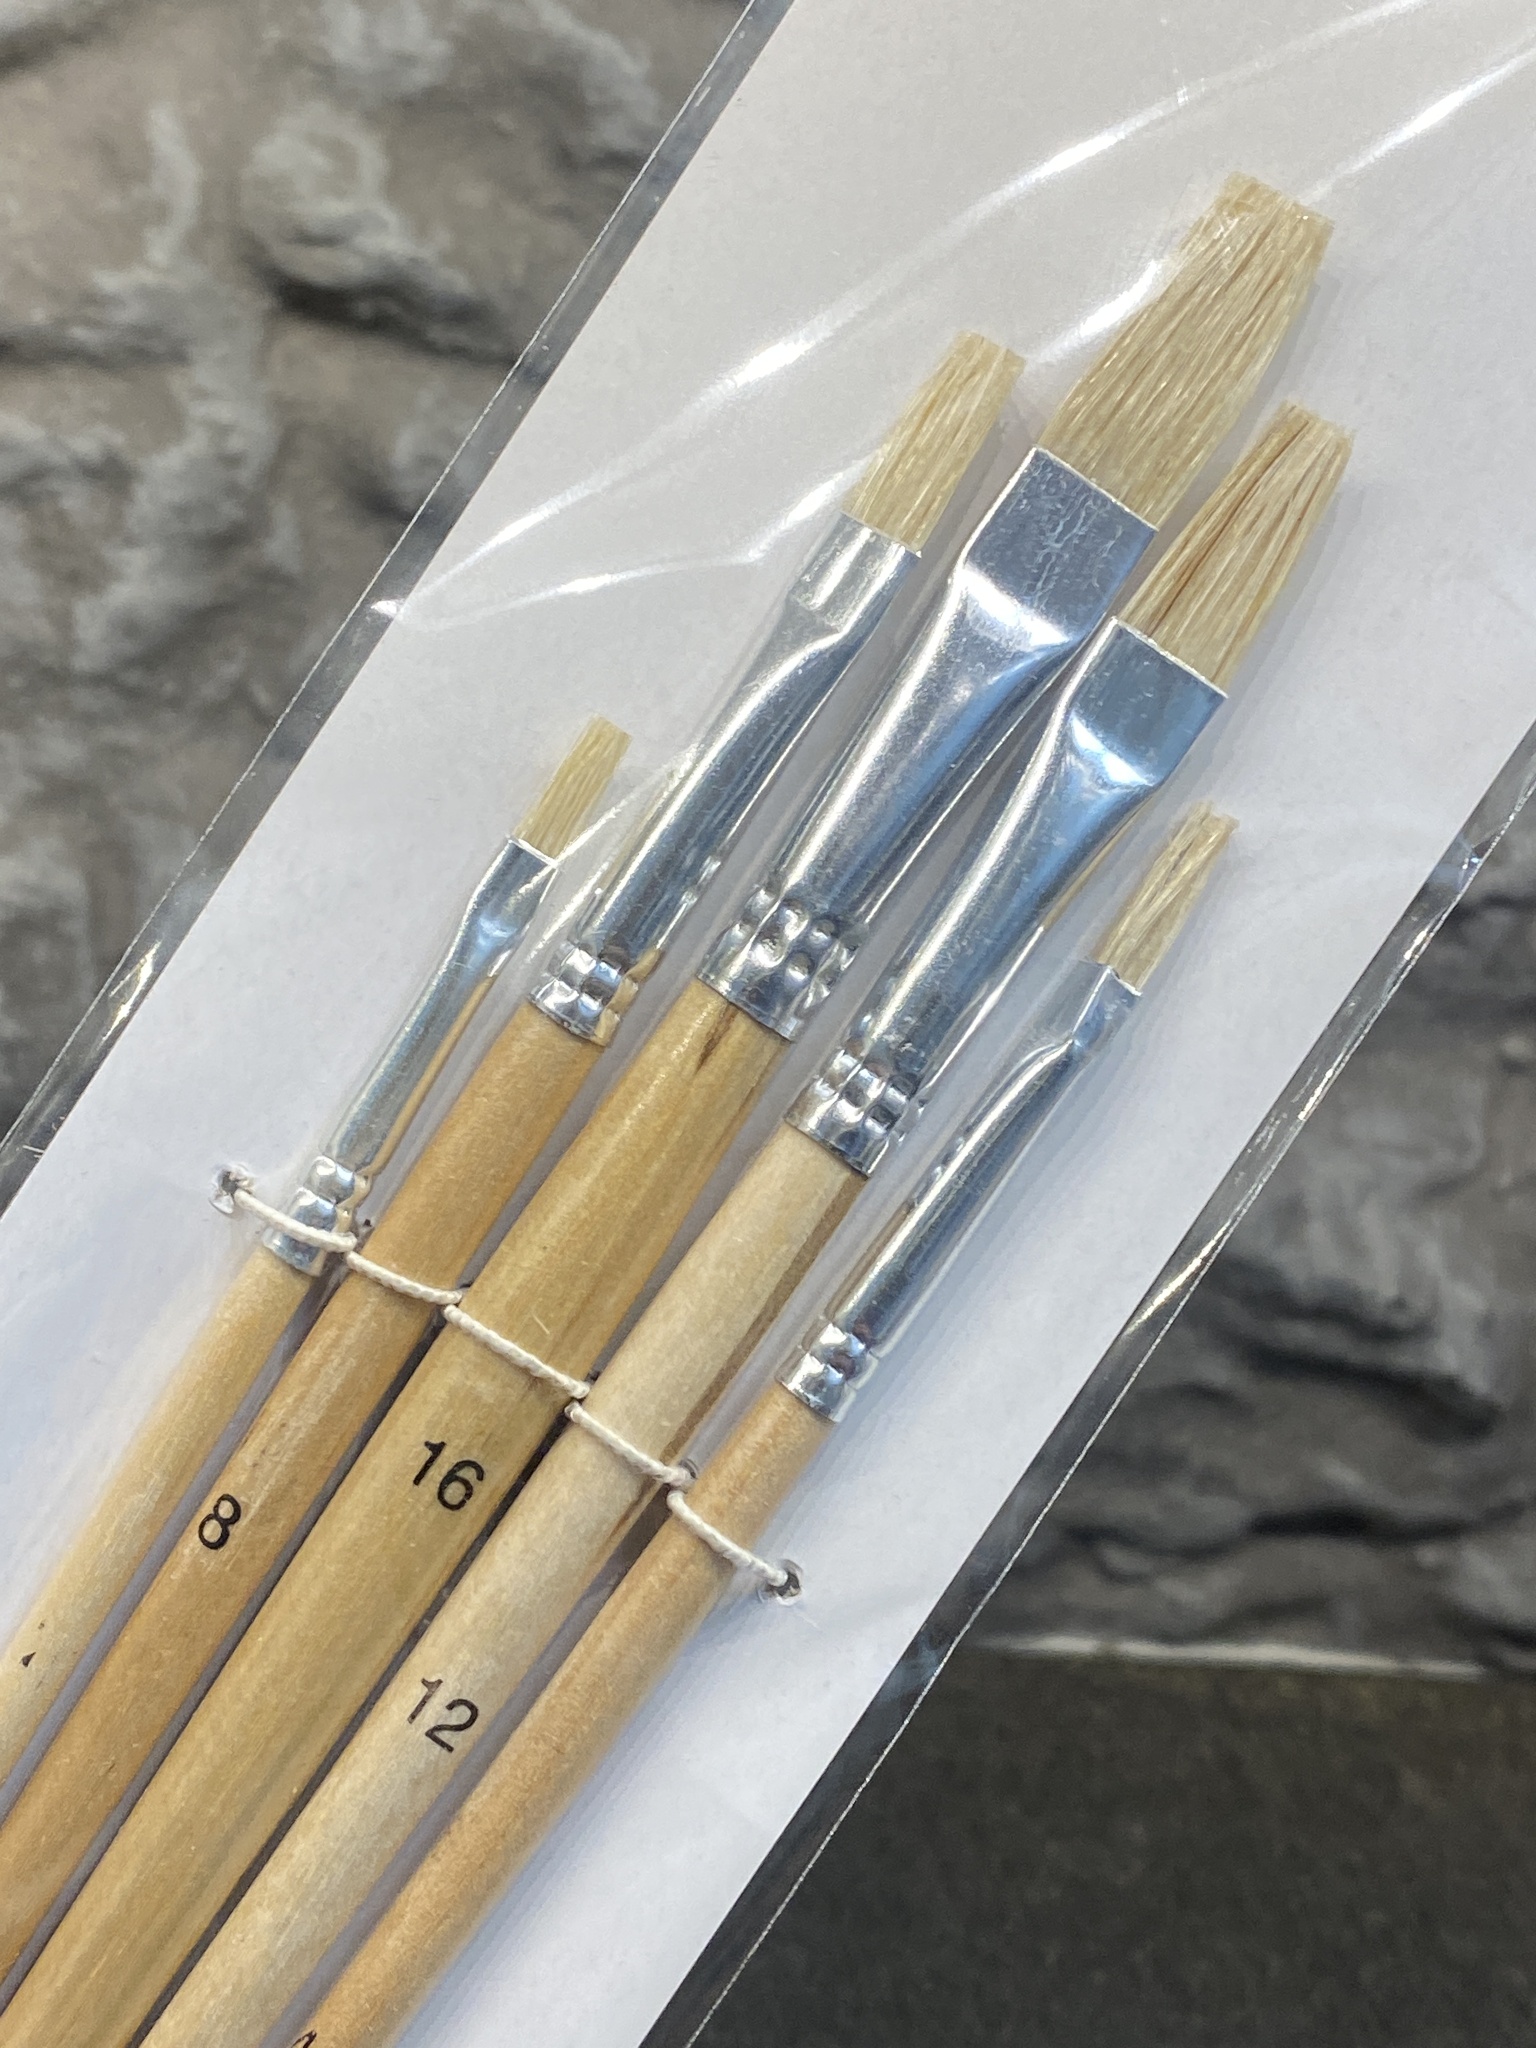 Konstnärs-pensel-set med 5 olika, Storlek av Pensel 0-16 från Artino